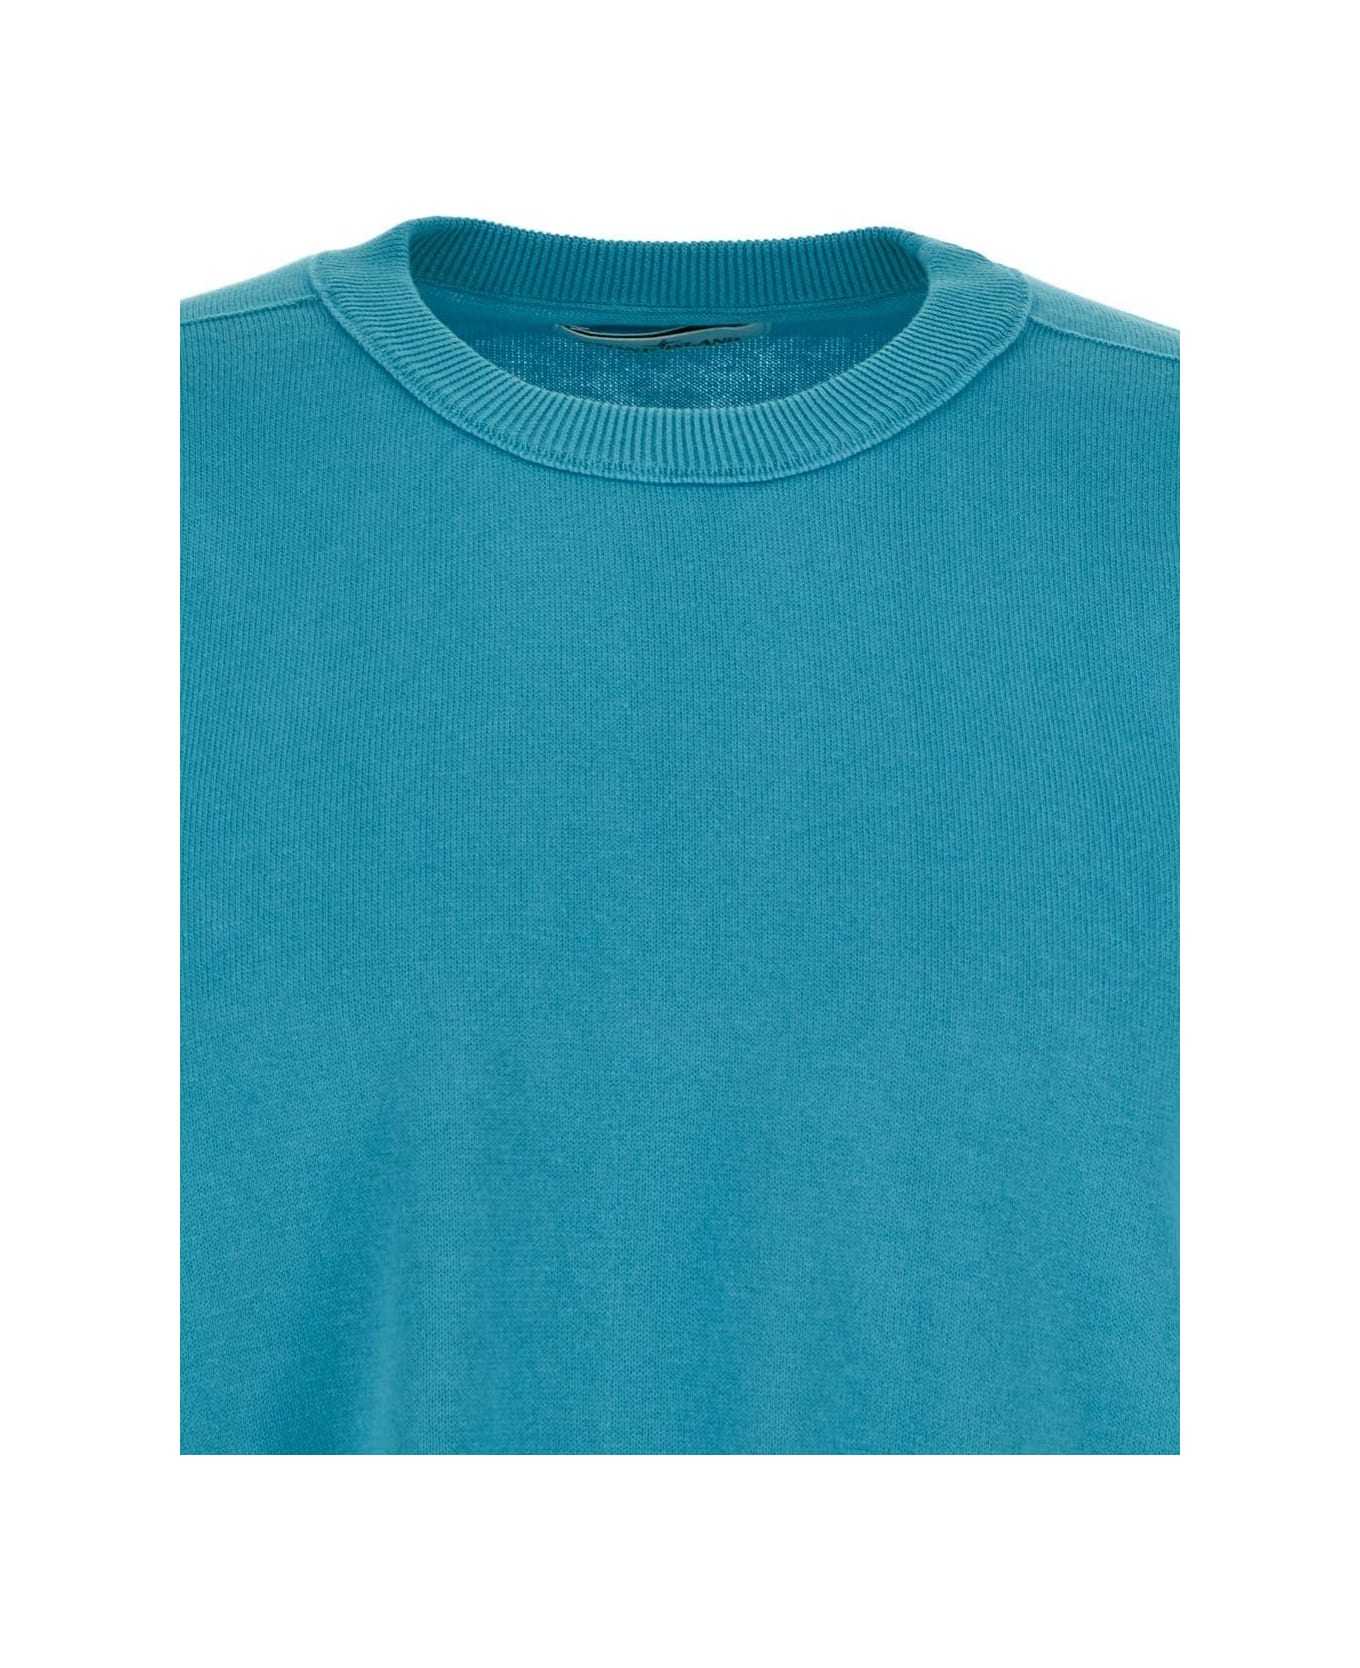 Stone Island Turquoise Sweater - V0042